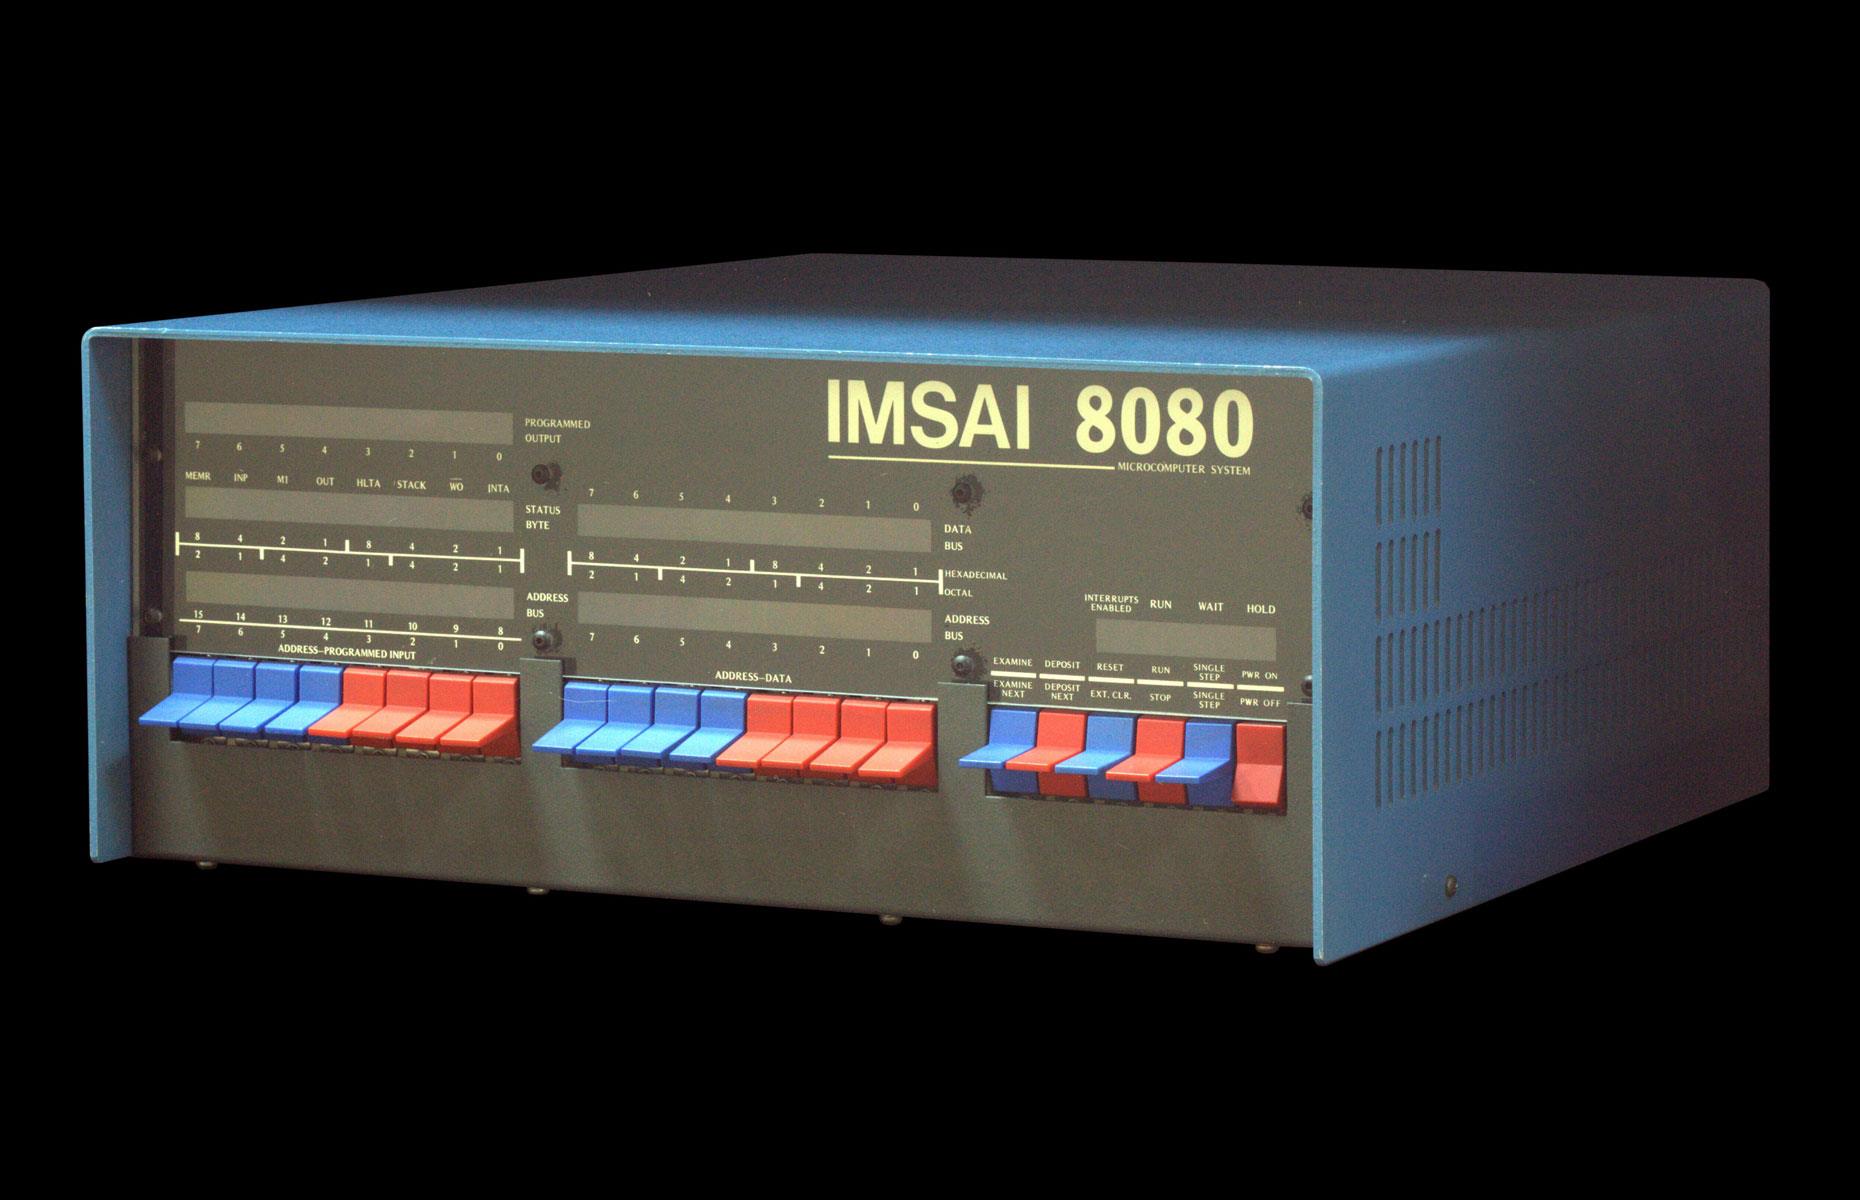 IMSAI 8080: up to $2,000 (£1,608)